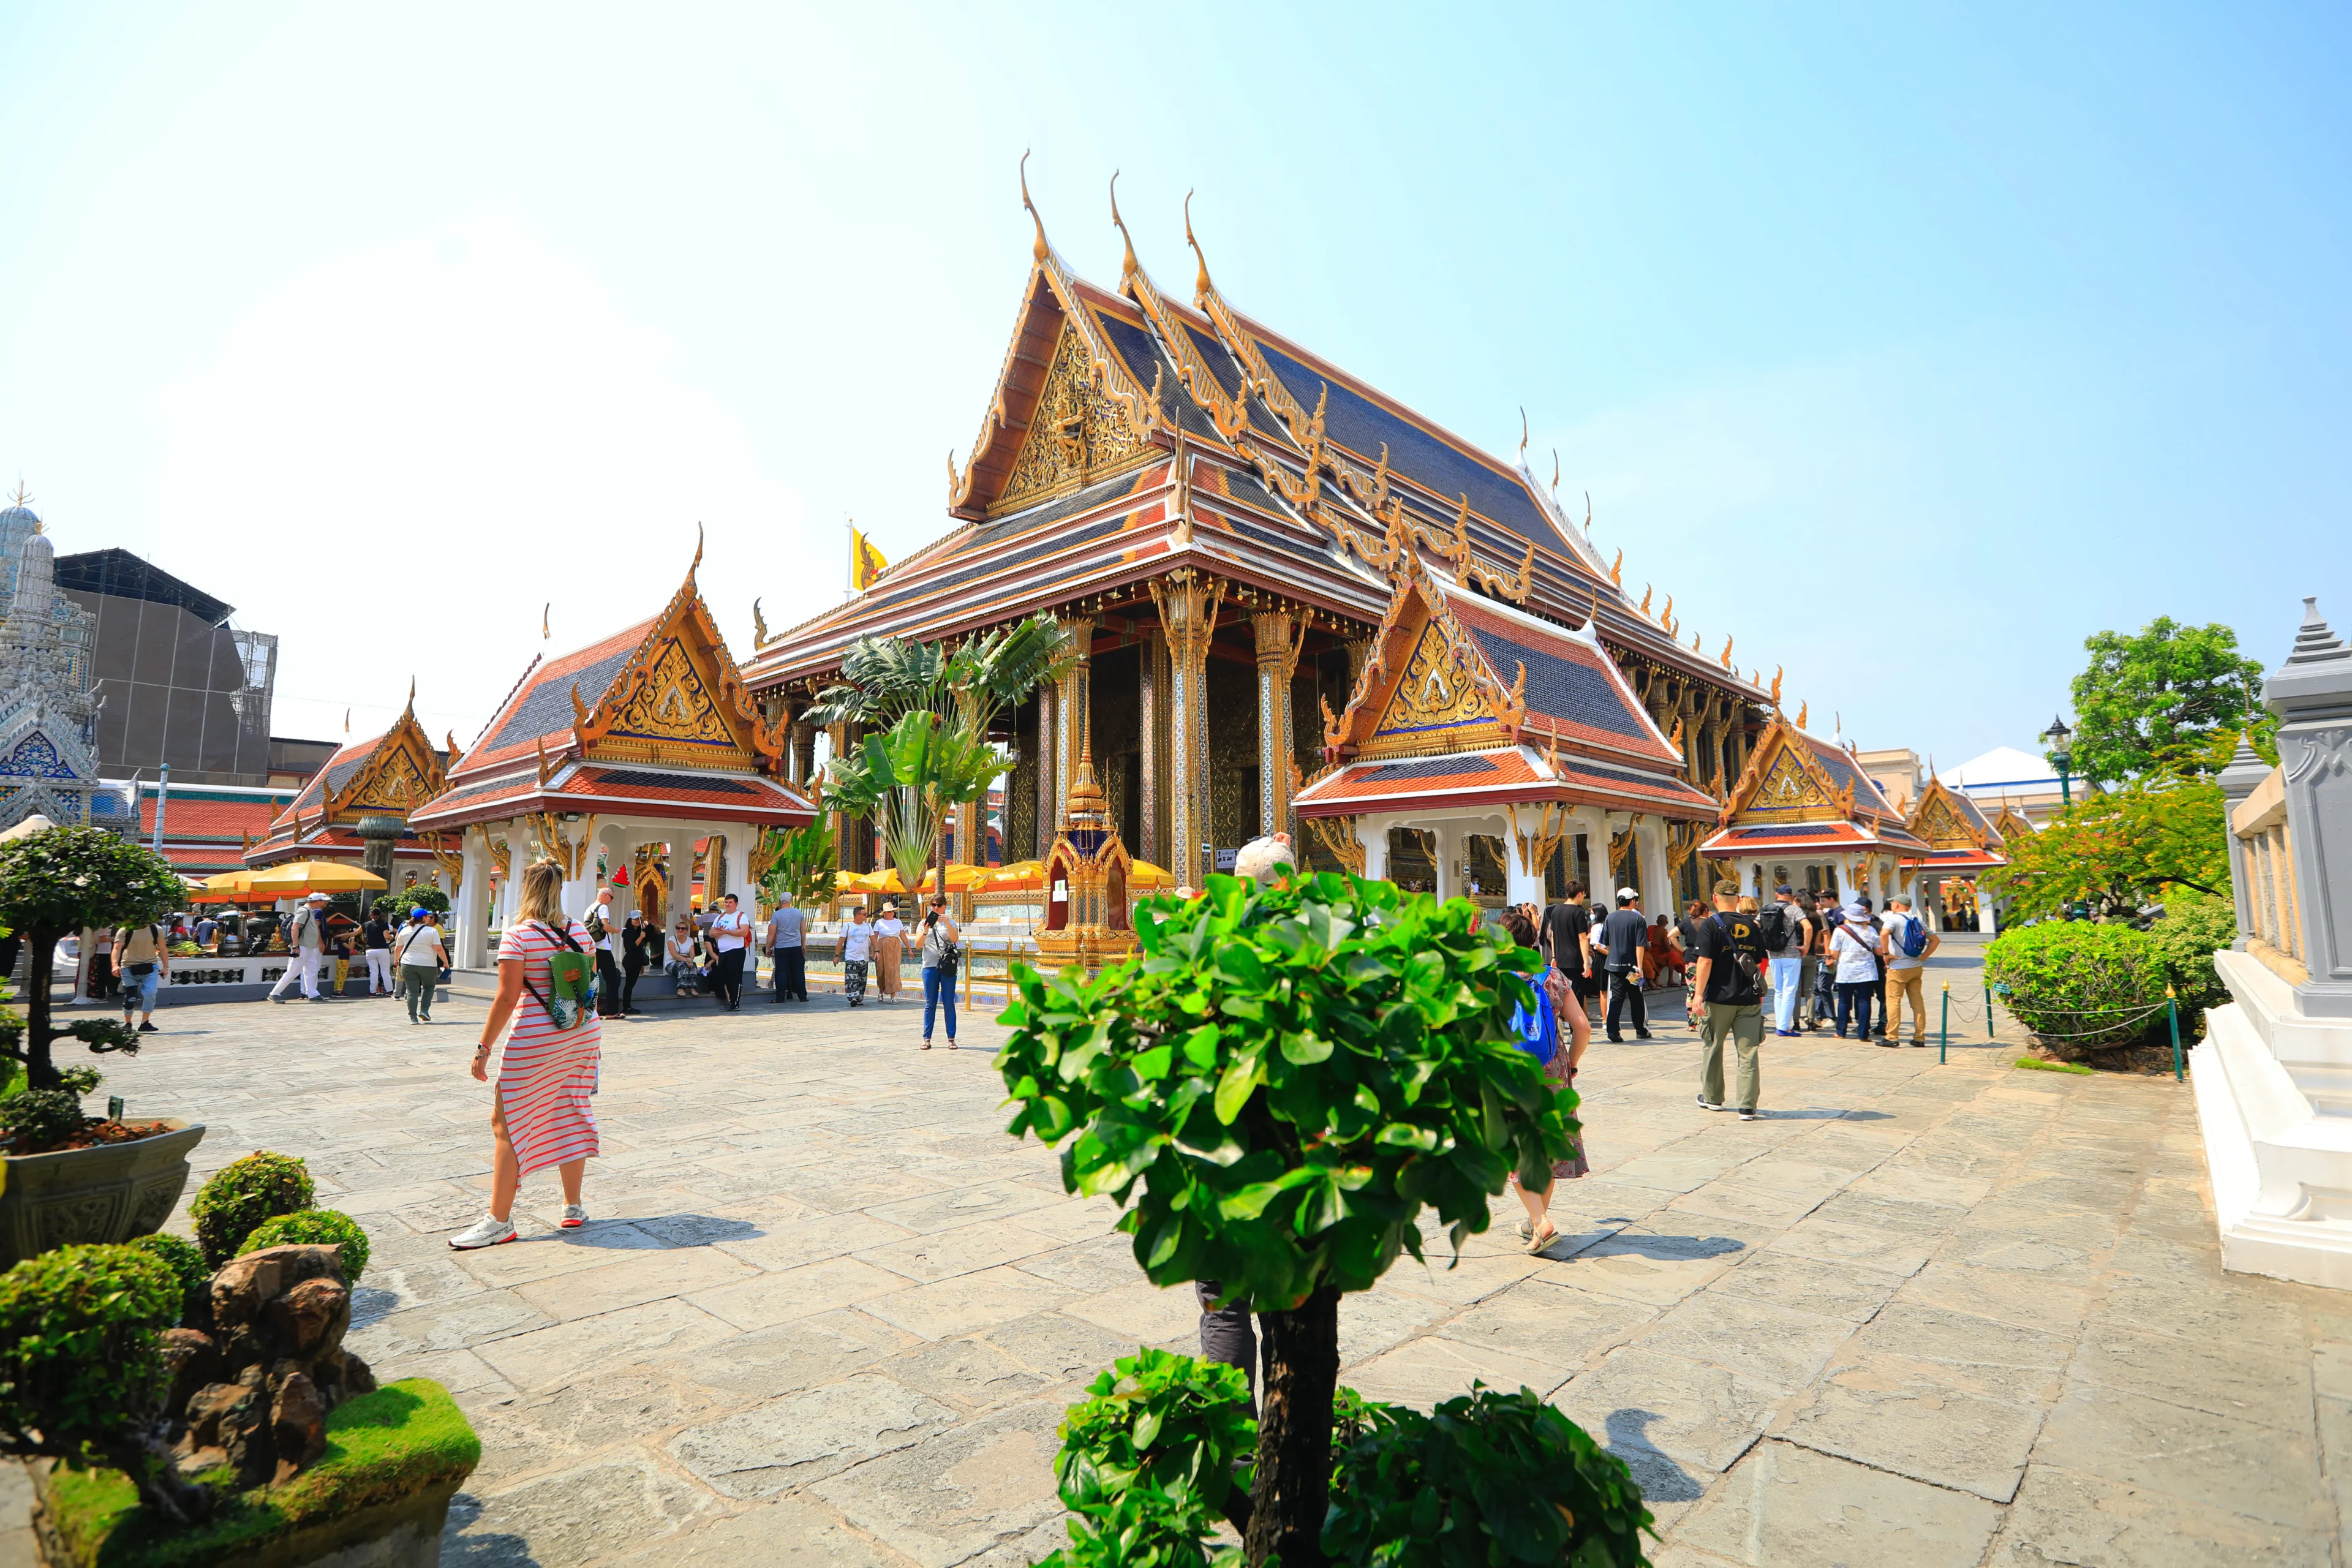 Royal Palace in Bangkok, Thailand